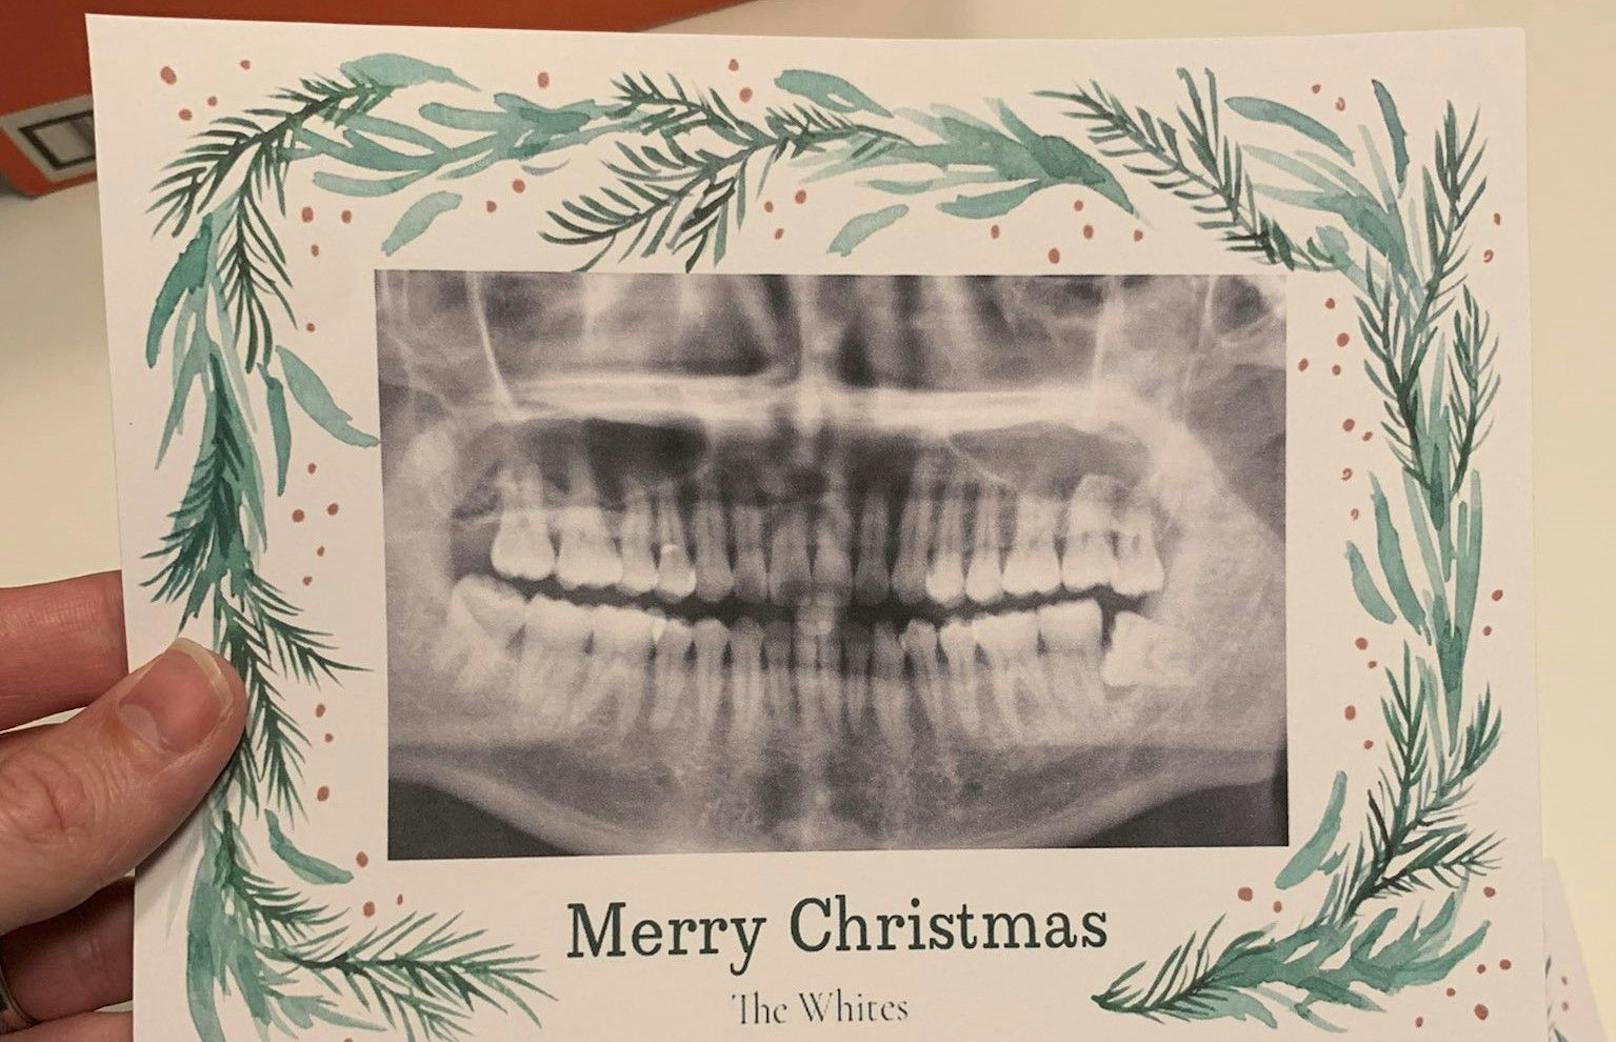 Nicht nur, dass ein Zahnröntgen die Karte ziert, ist sie auch noch mit "Frohe Weihnachten wünschen die Whites" unterschrieben.